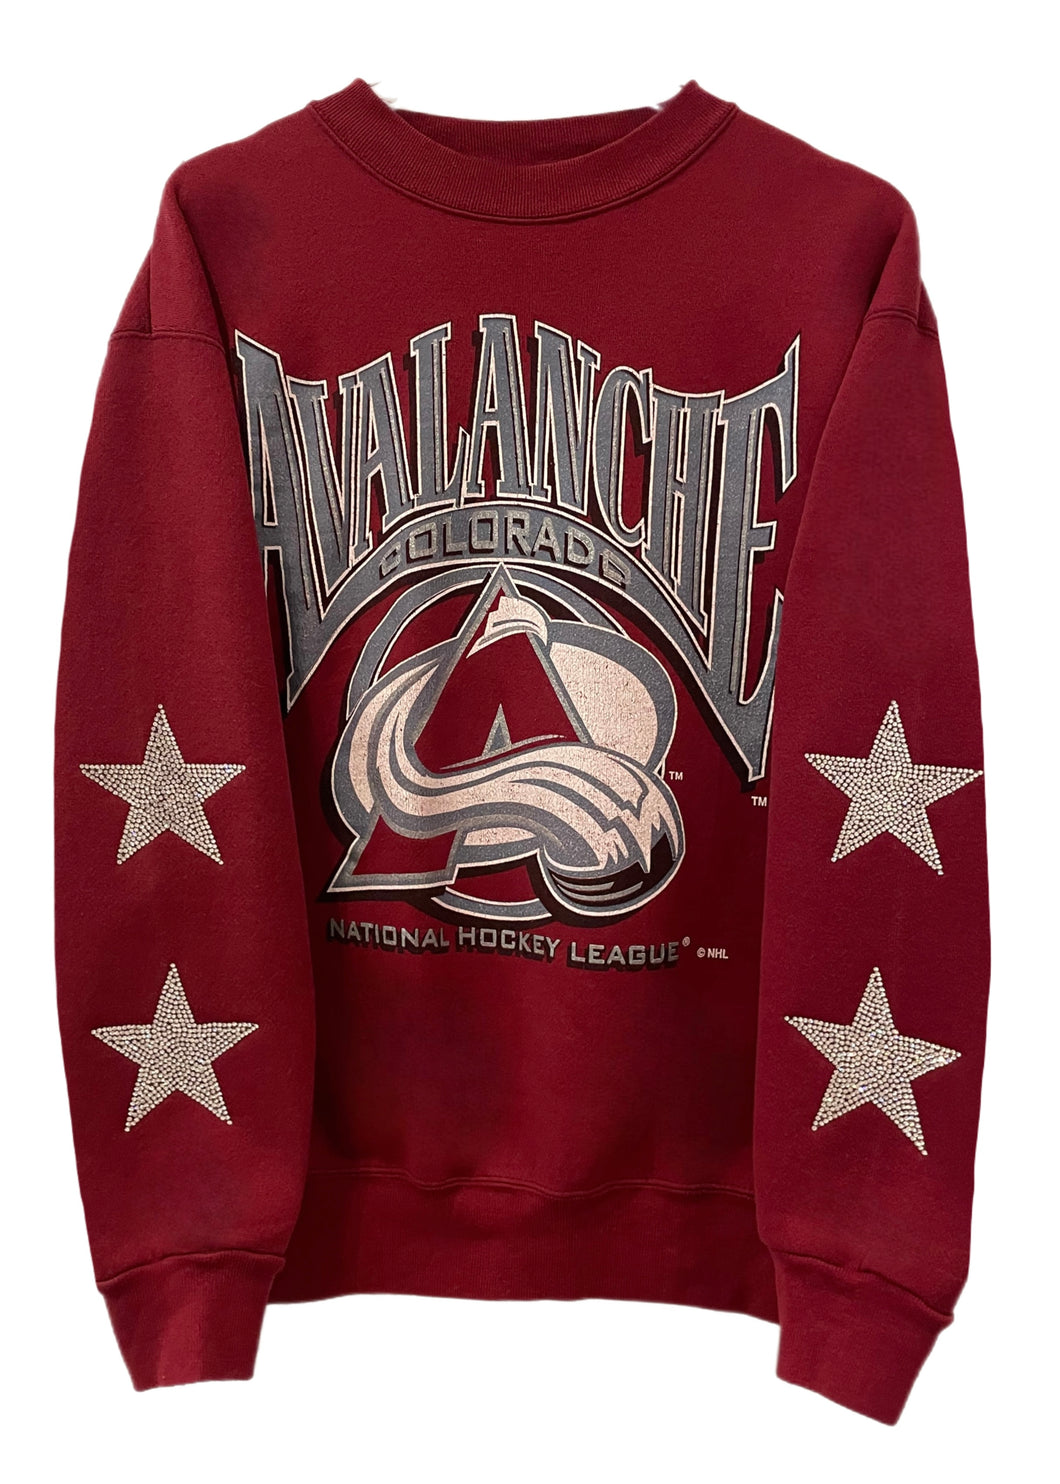 Vintage Colorado Avalanche Sweatshirt